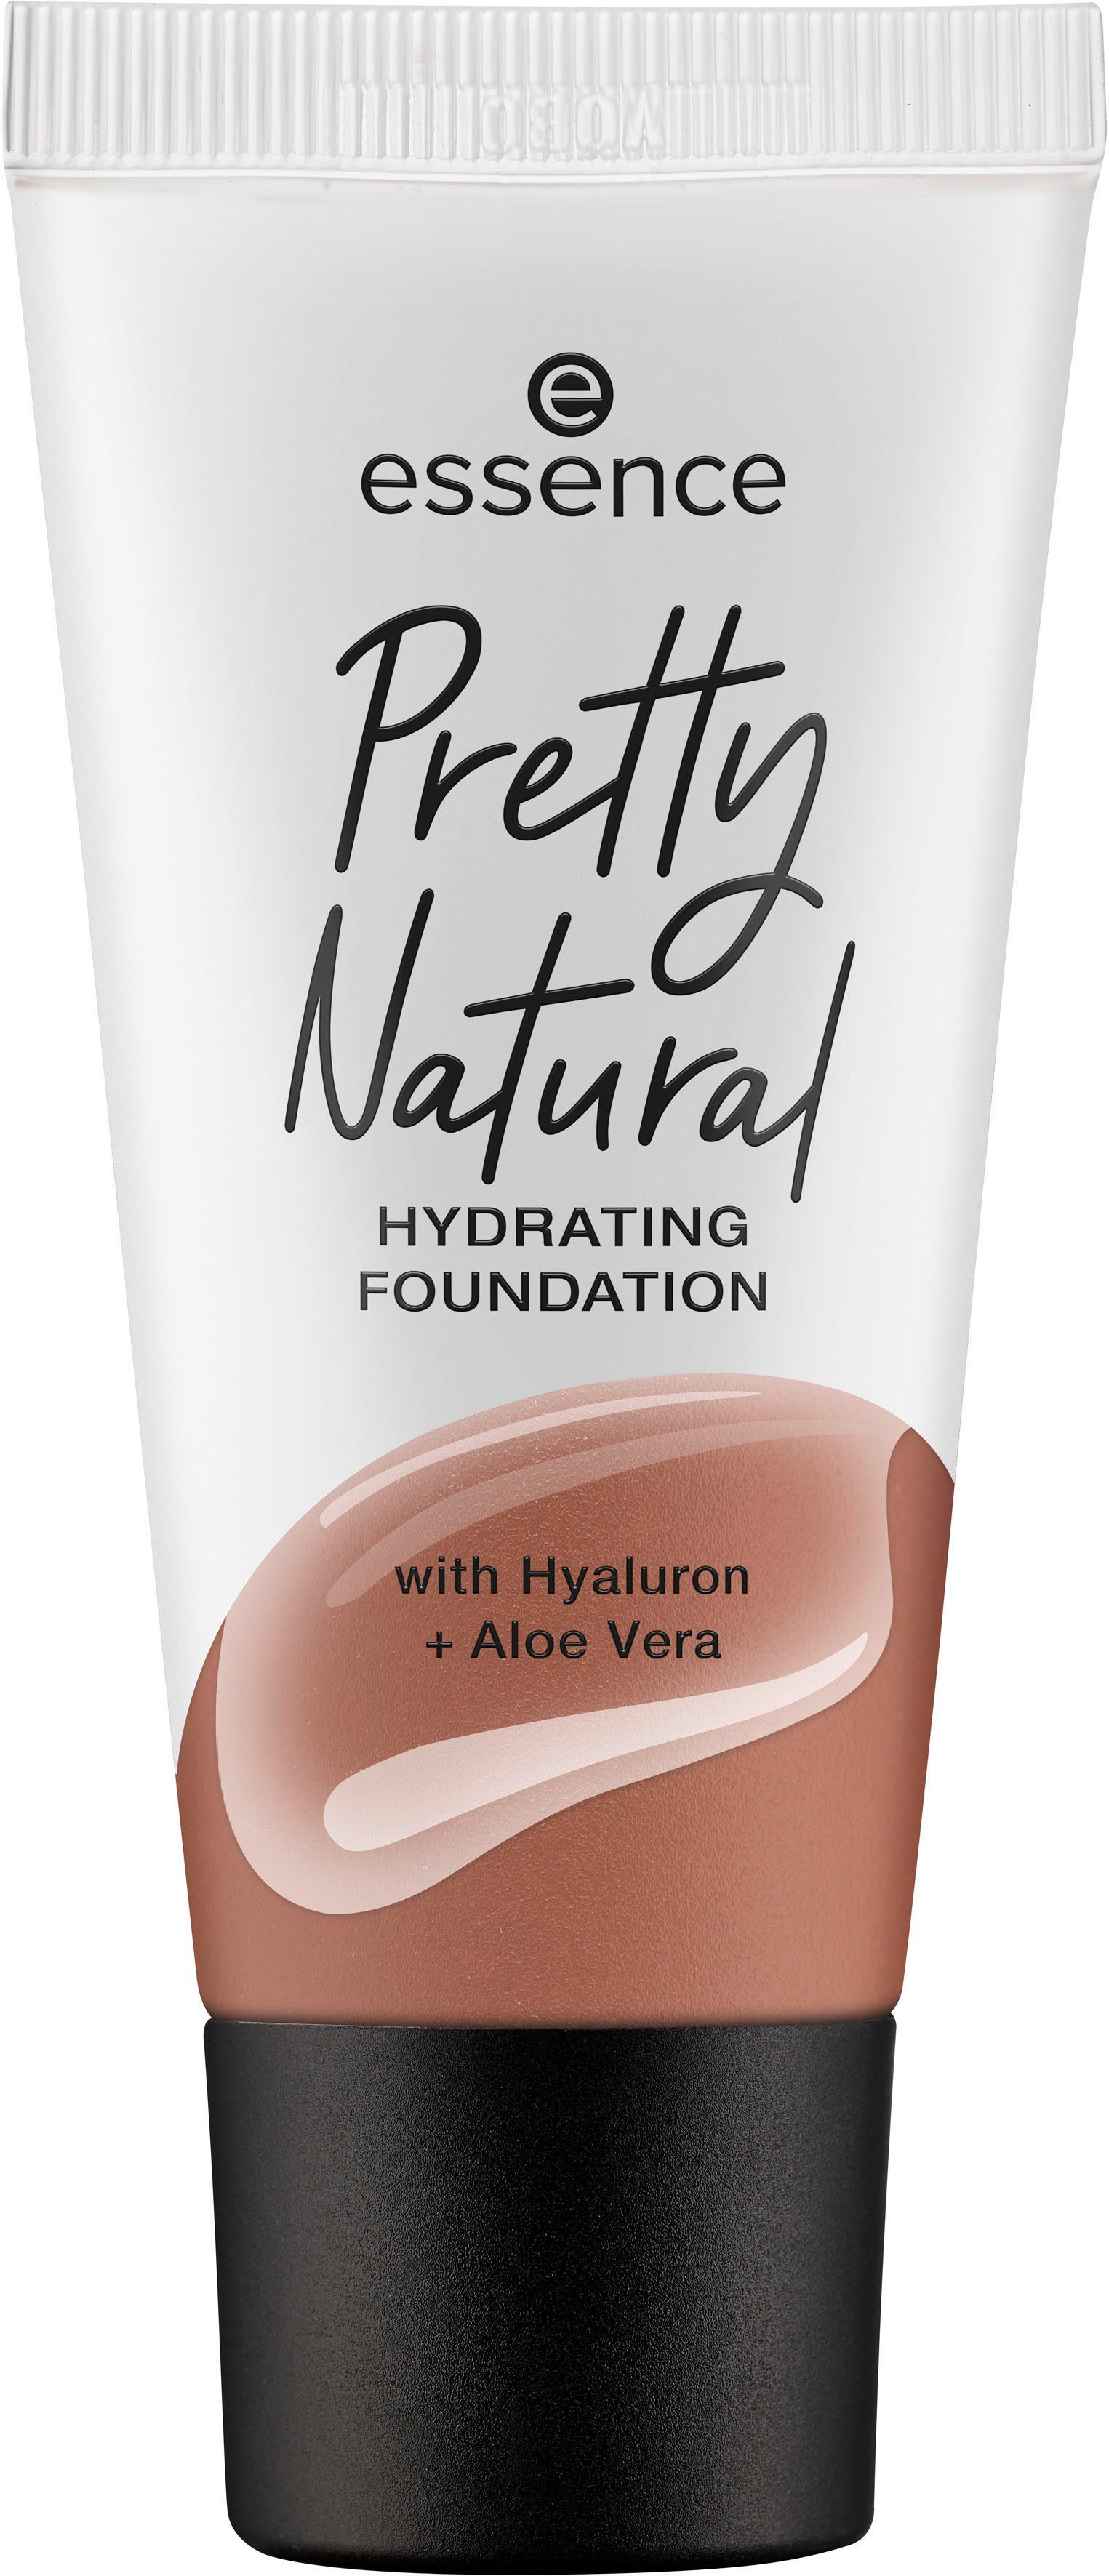 Essence Foundation HYDRATING, Sienna Warm Pretty Natural 3-tlg